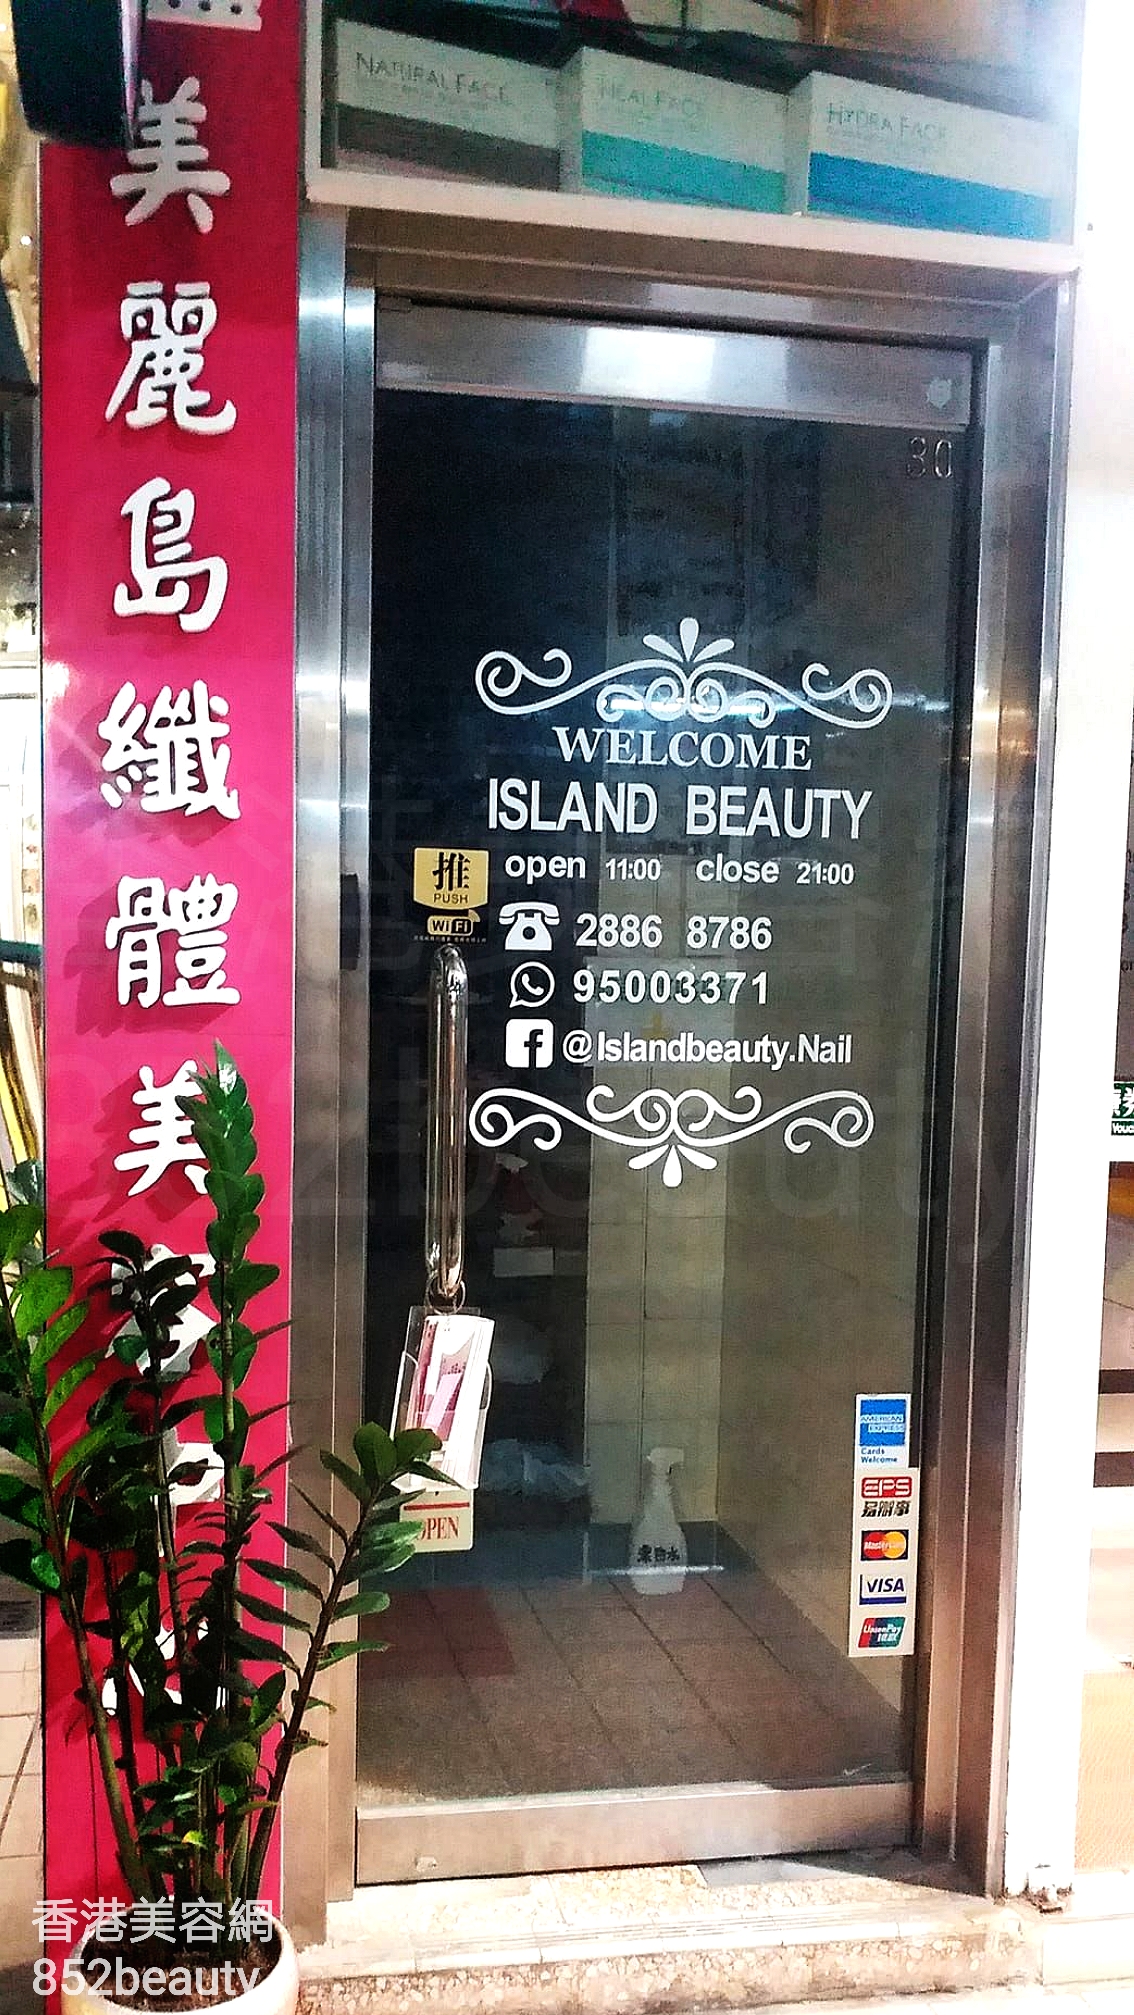 香港美容網 Hong Kong Beauty Salon 美容院 / 美容師: Island Beauty 美麗鳥纖體美容中心